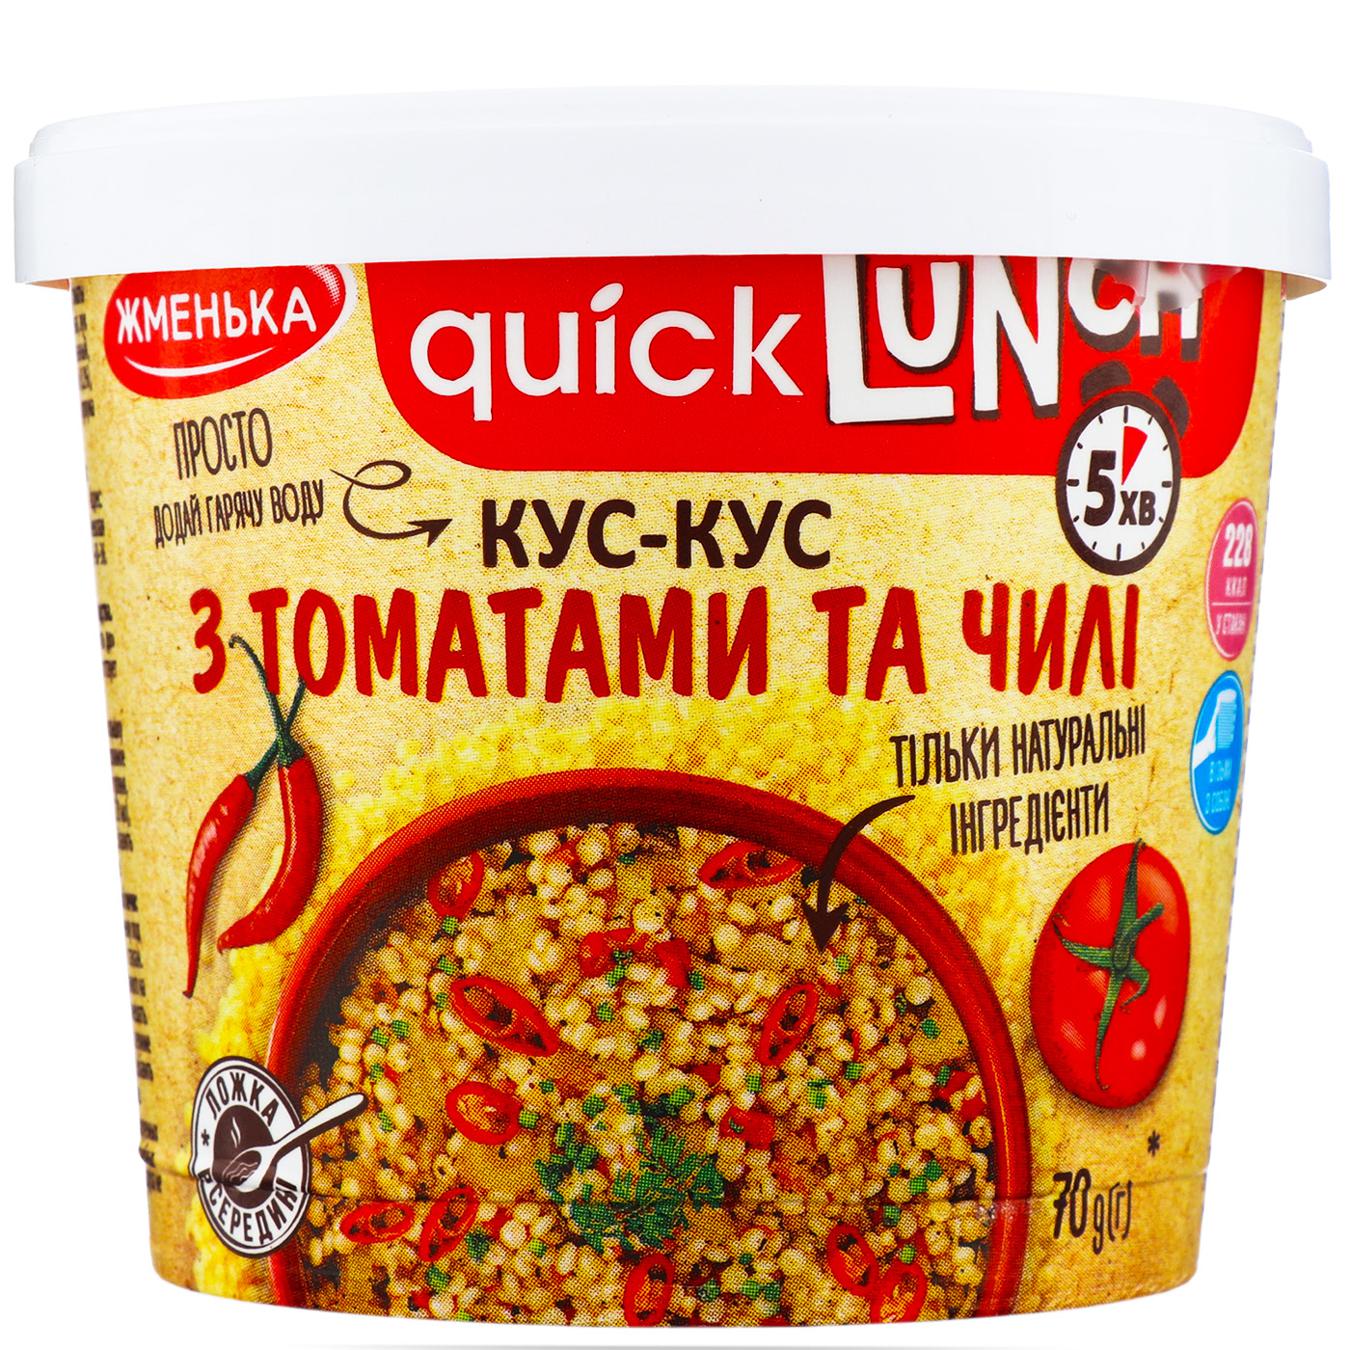 Кус-кус Жменька Quick Lunch з томатами та чилі 70г